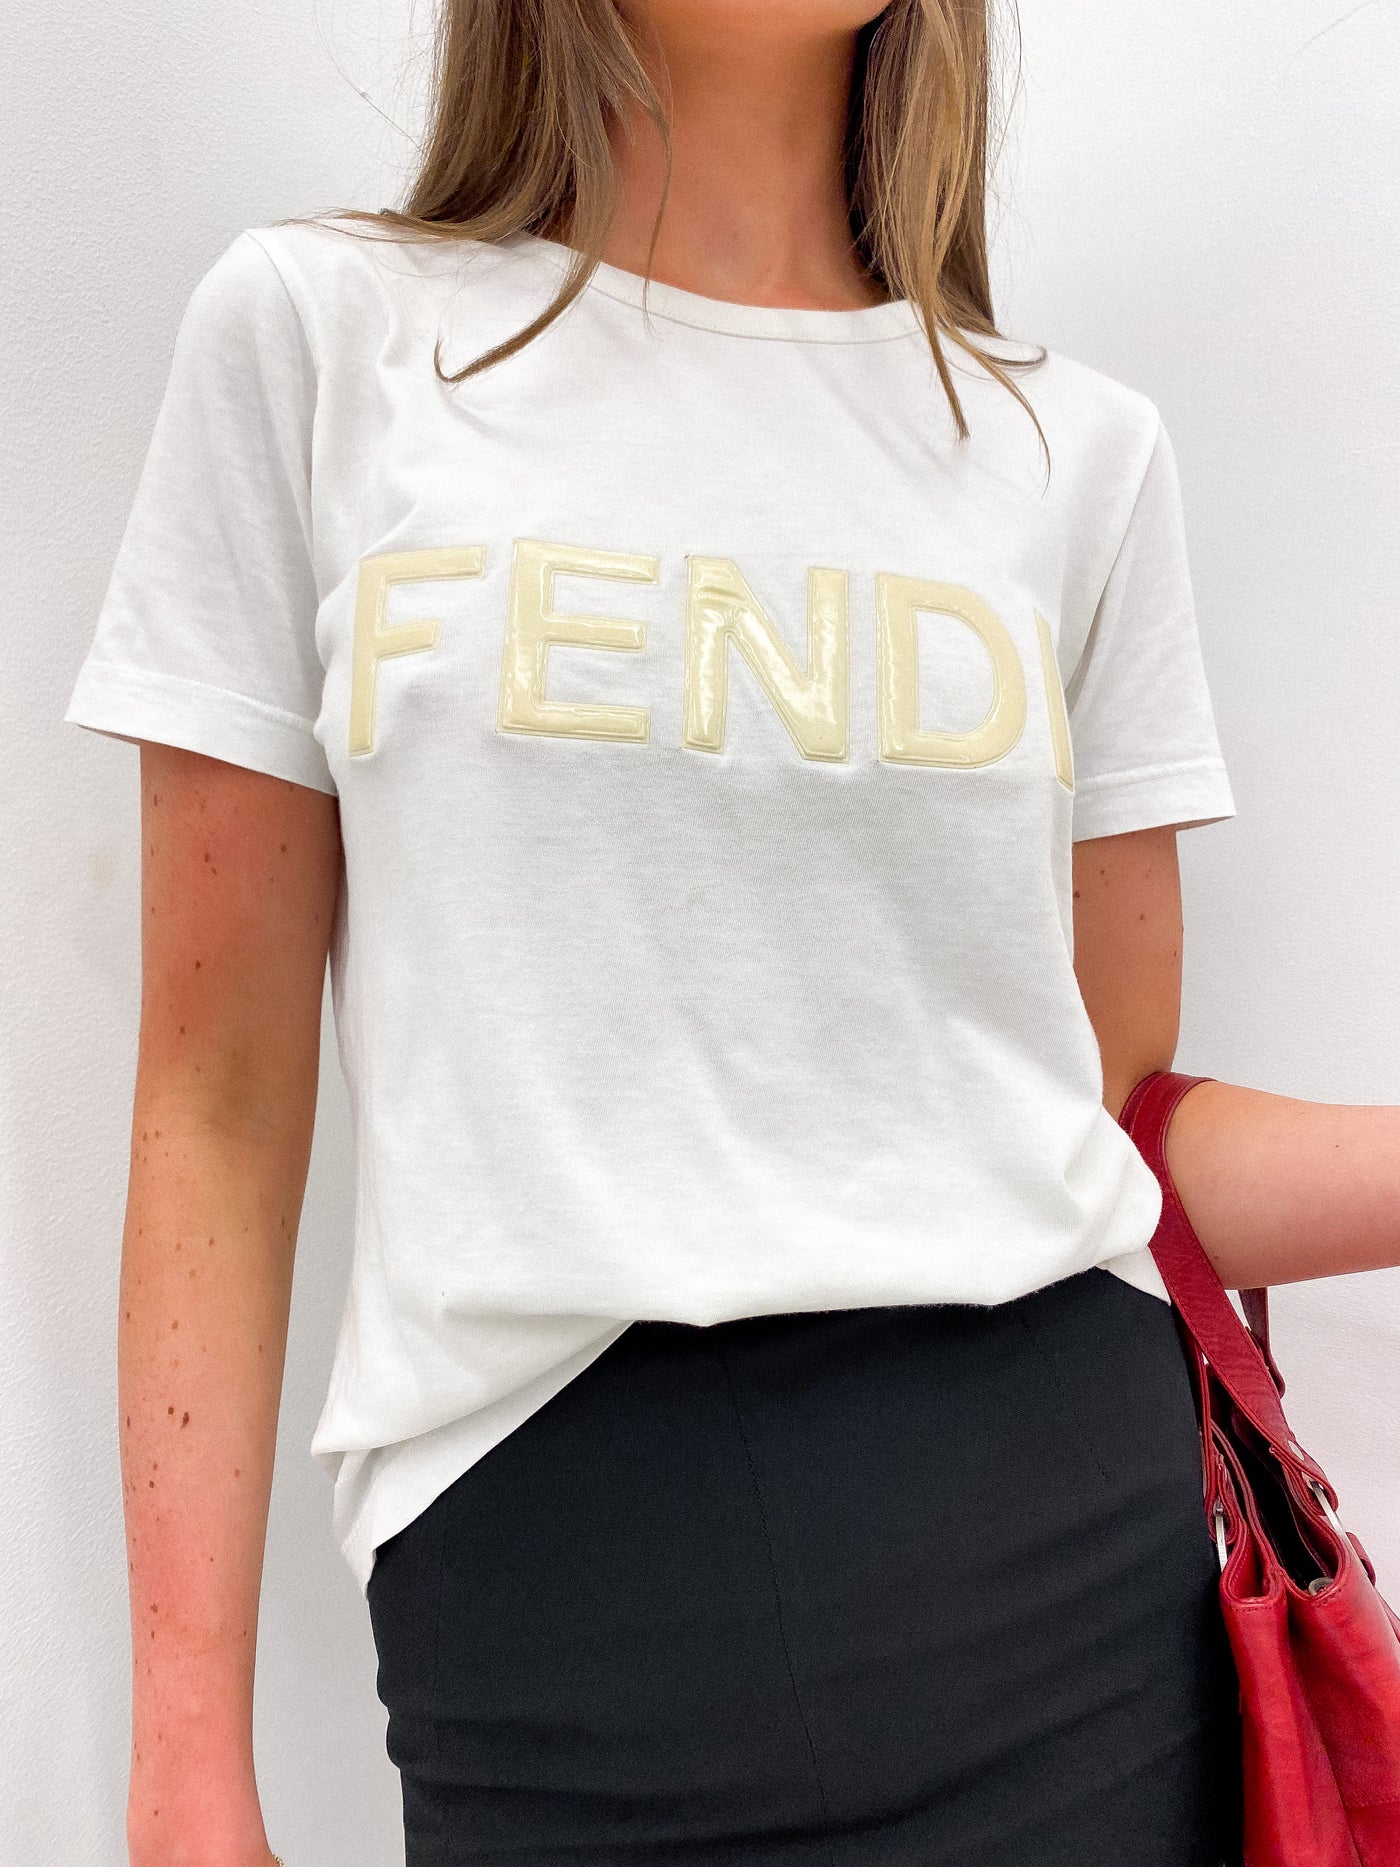 FENDI Logo Tee Size M